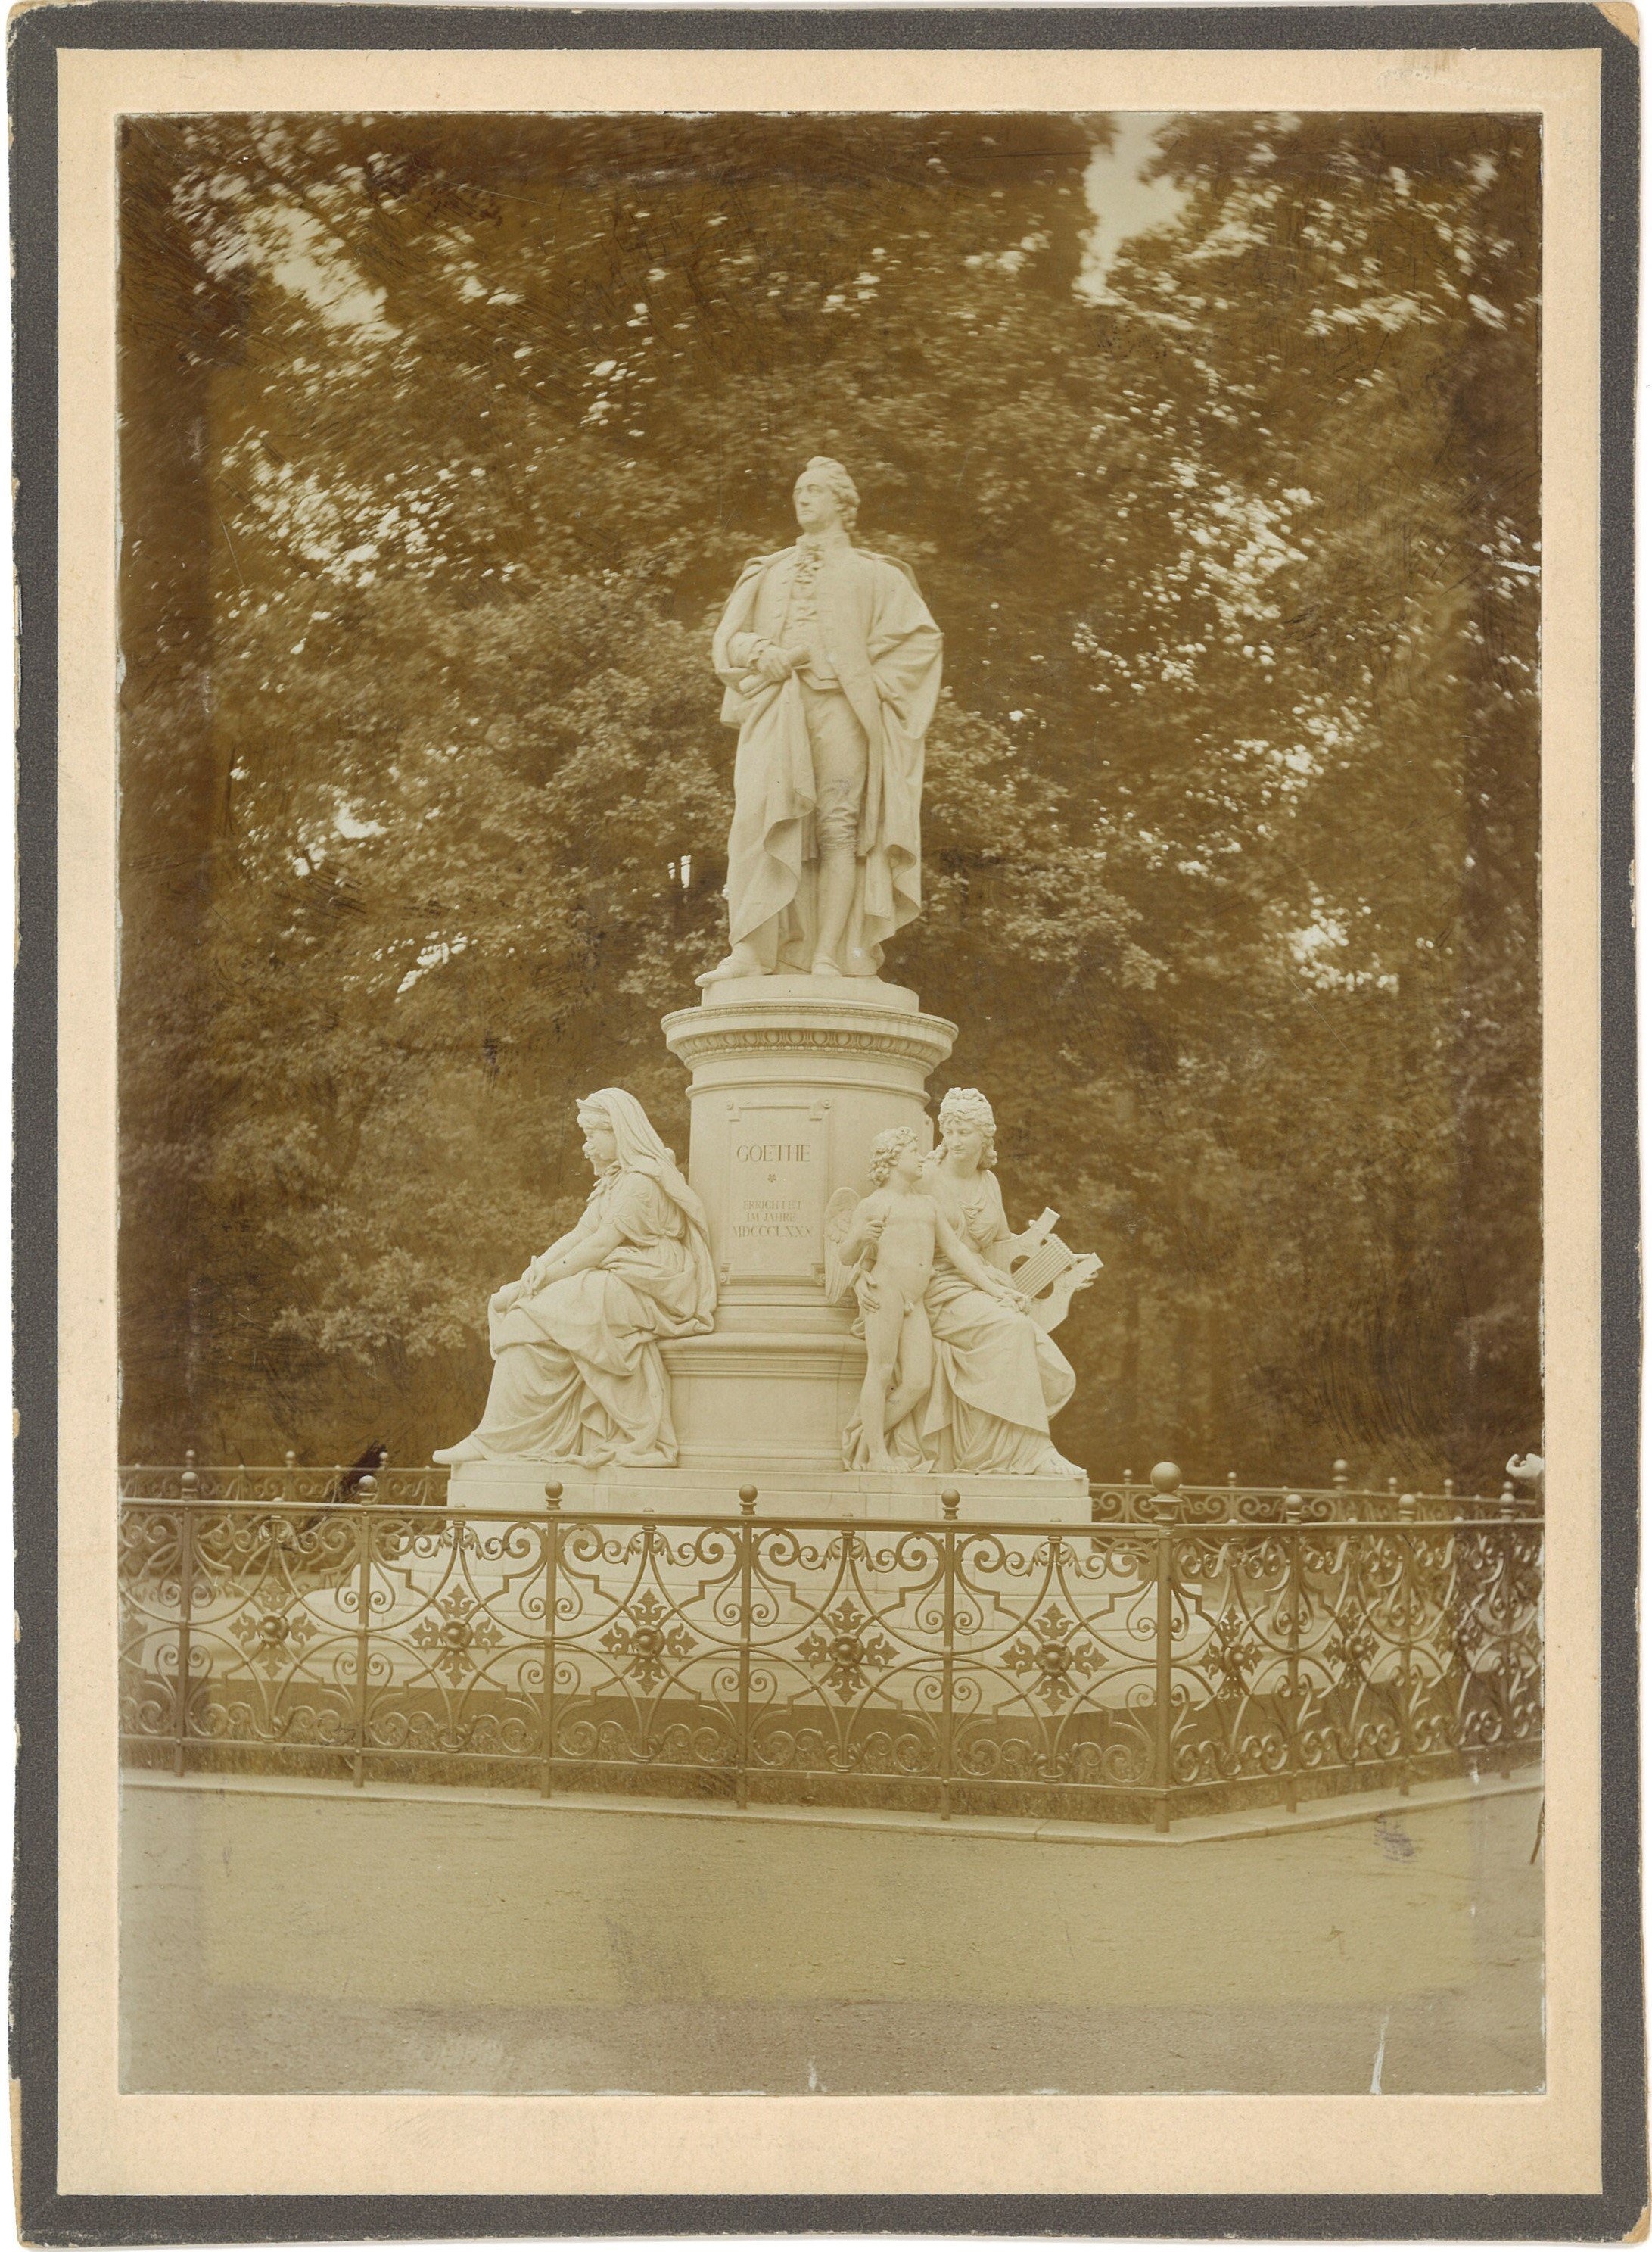 Berlin-Tiergarten: Goethe-Denkmal (Landesgeschichtliche Vereinigung für die Mark Brandenburg e.V., Archiv CC BY)